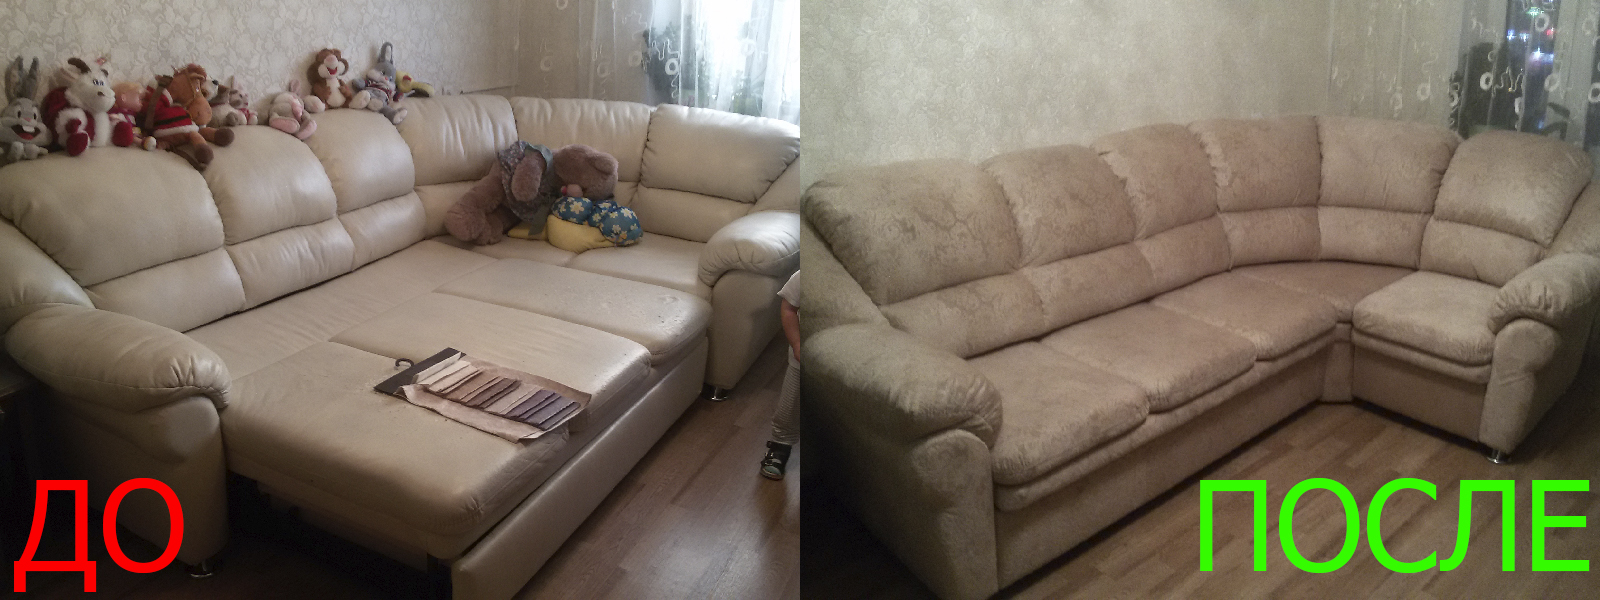 Ремонт диванов искусственной кожей в Керчи от опытных мастеров компании MebelProfi - 100% гарантия